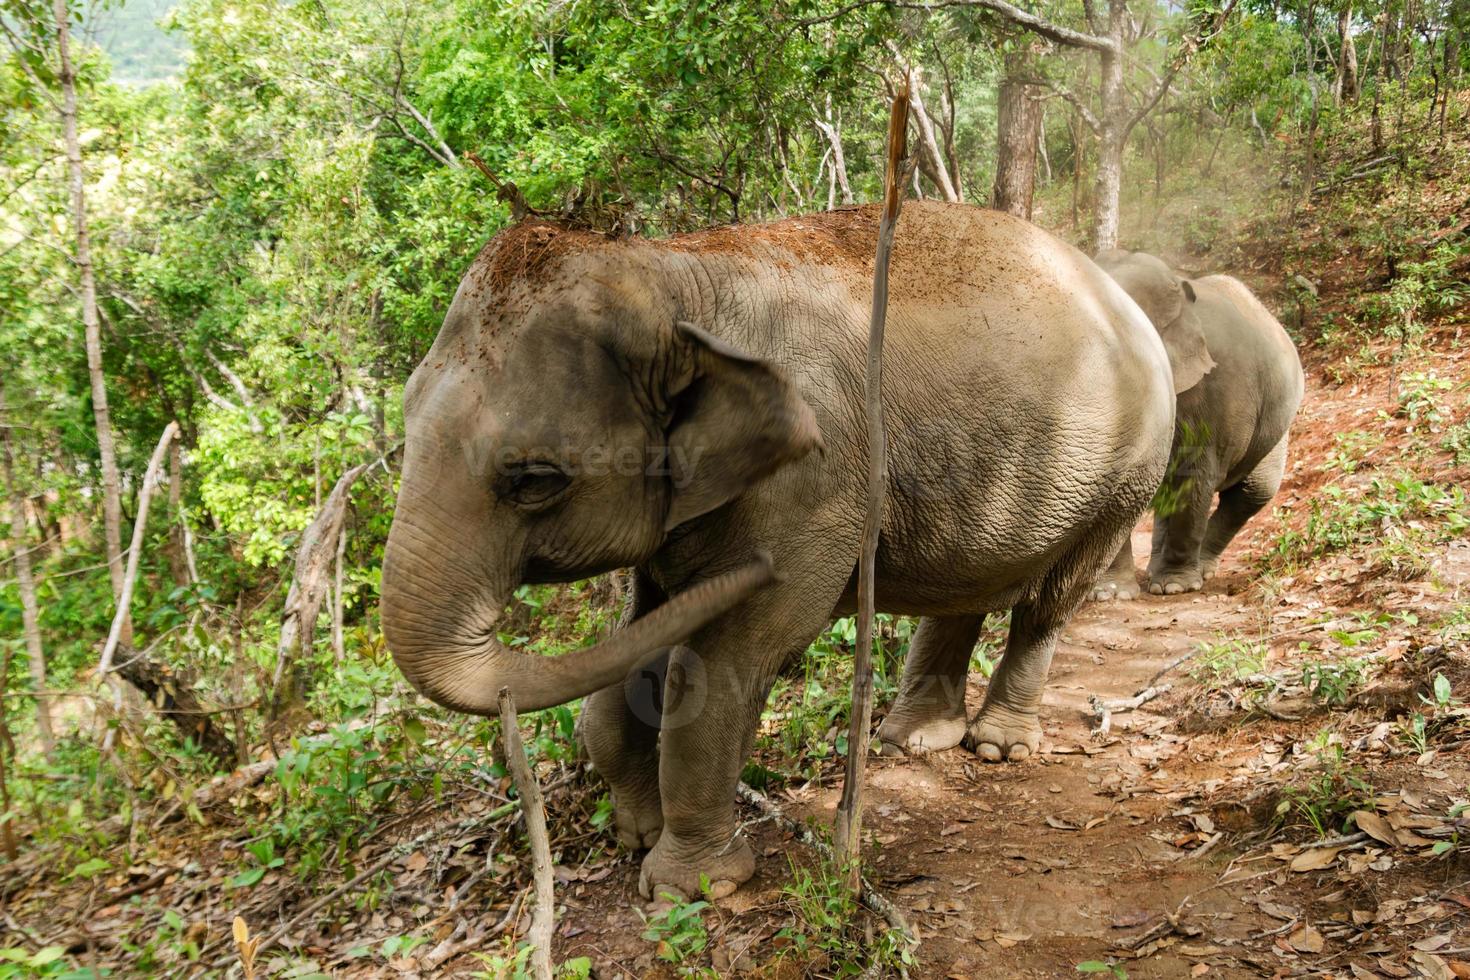 elefante a piedi attraverso il foresta pluviale. chiang Mai Provincia, Tailandia. foto